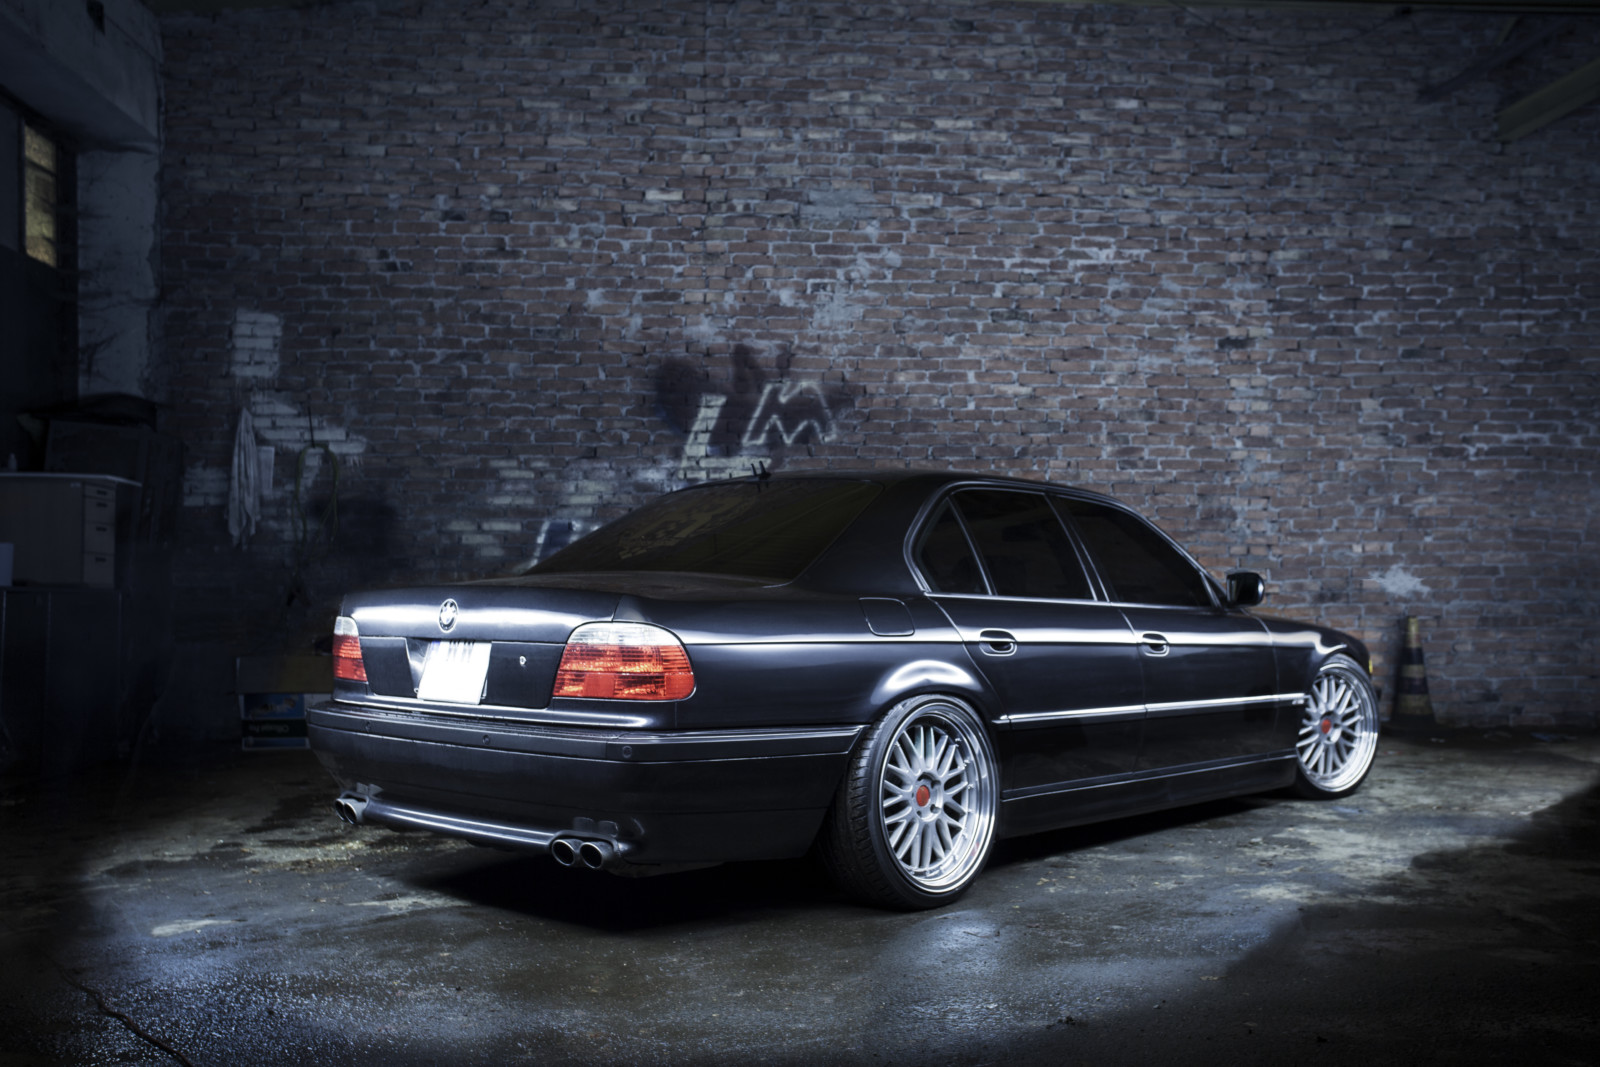 BMW E38 740i auto gangsterów czy polityków? Trends Magazines